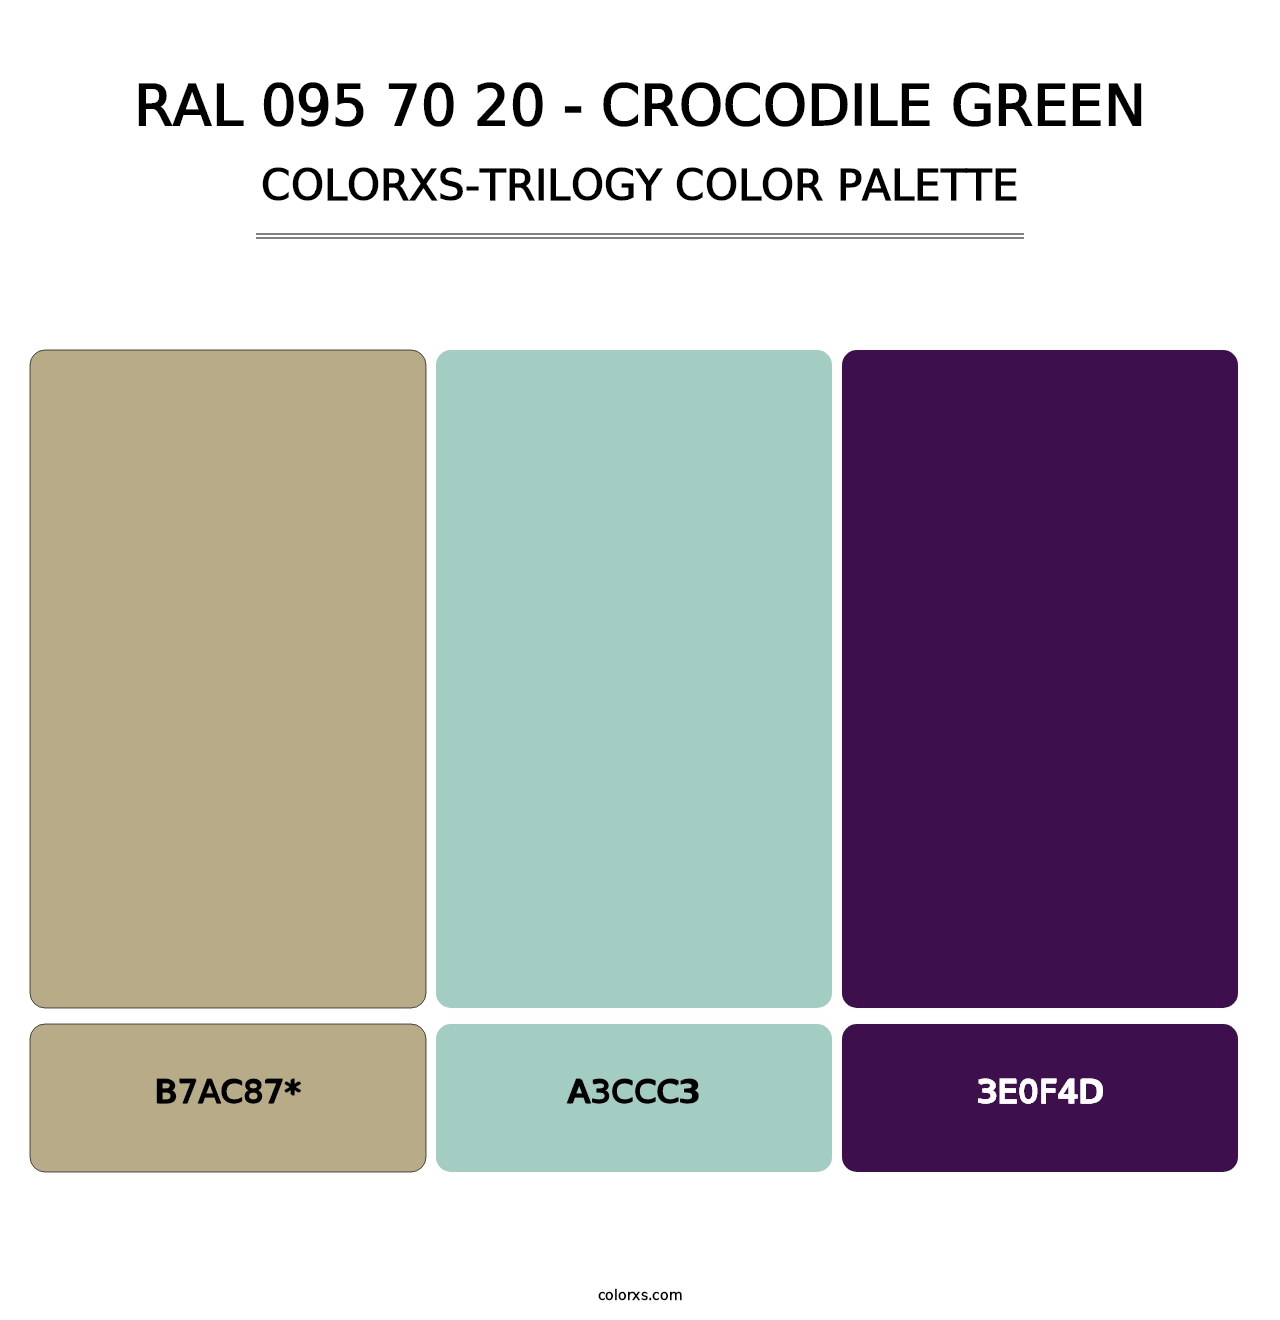 RAL 095 70 20 - Crocodile Green - Colorxs Trilogy Palette